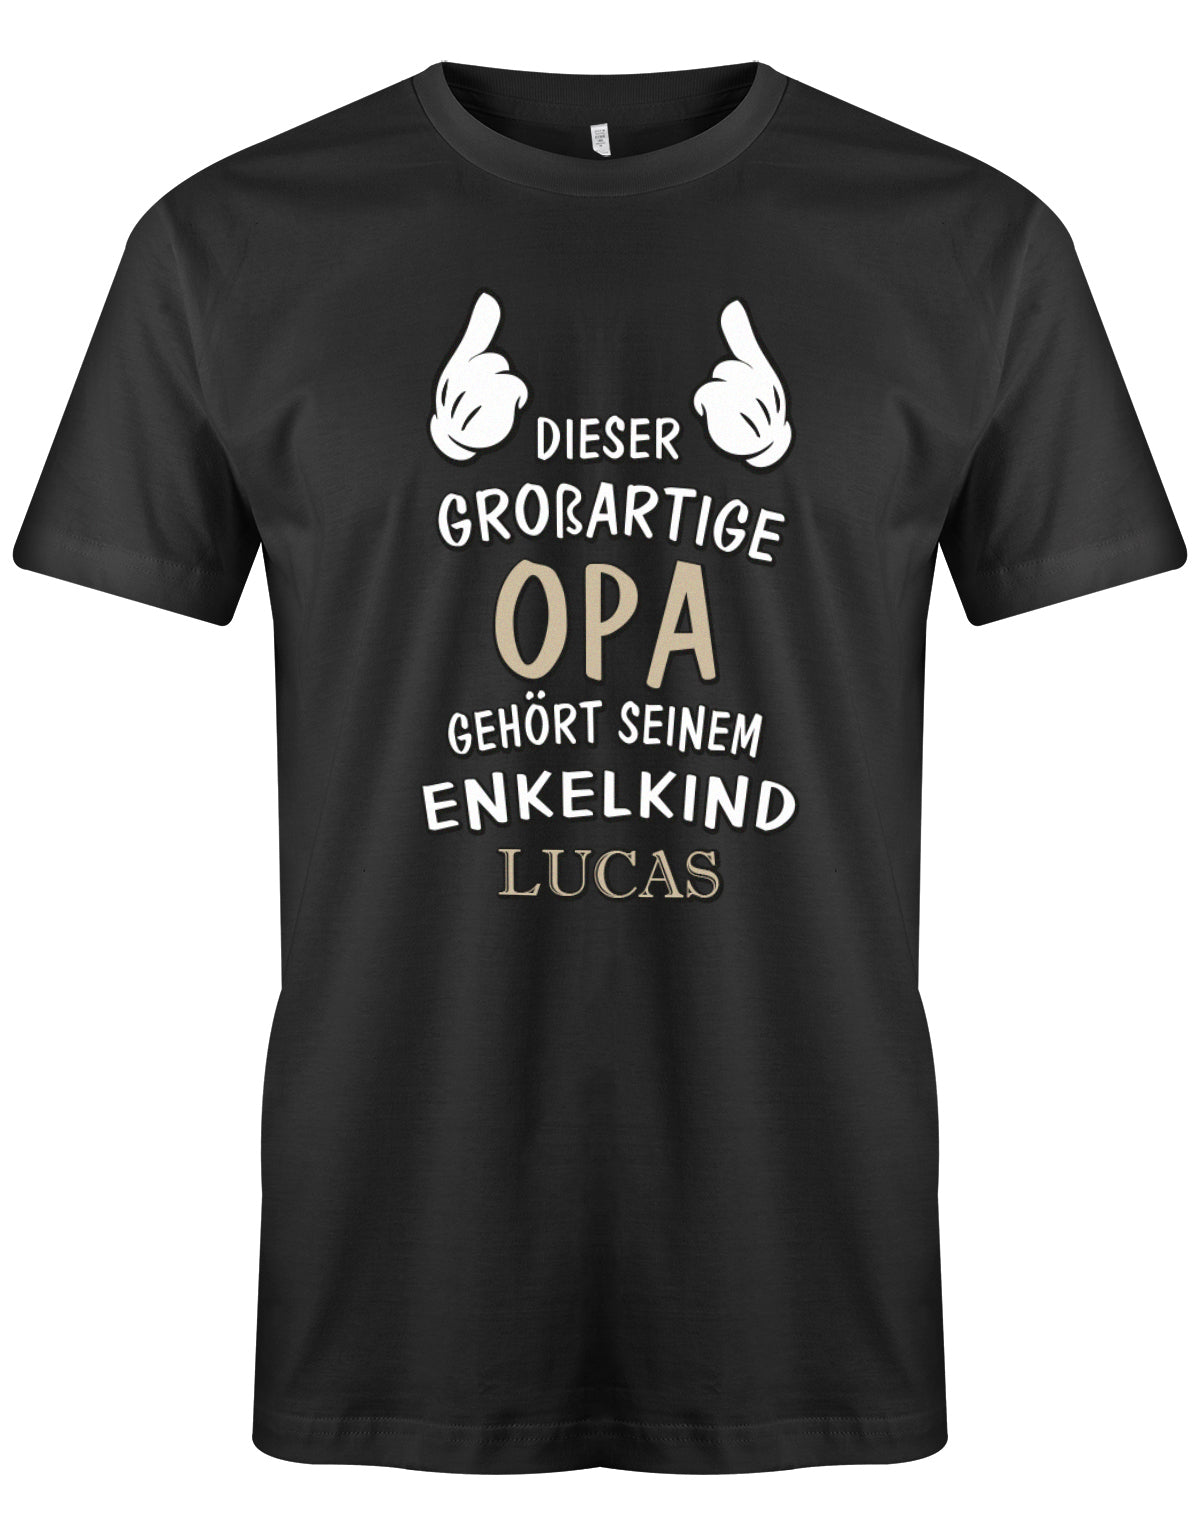 Opa Shirt personalisiert - Dieser großartige Opa gehört seinen Enkelkind. Mit Namen vom Enkelkind. Schwarz